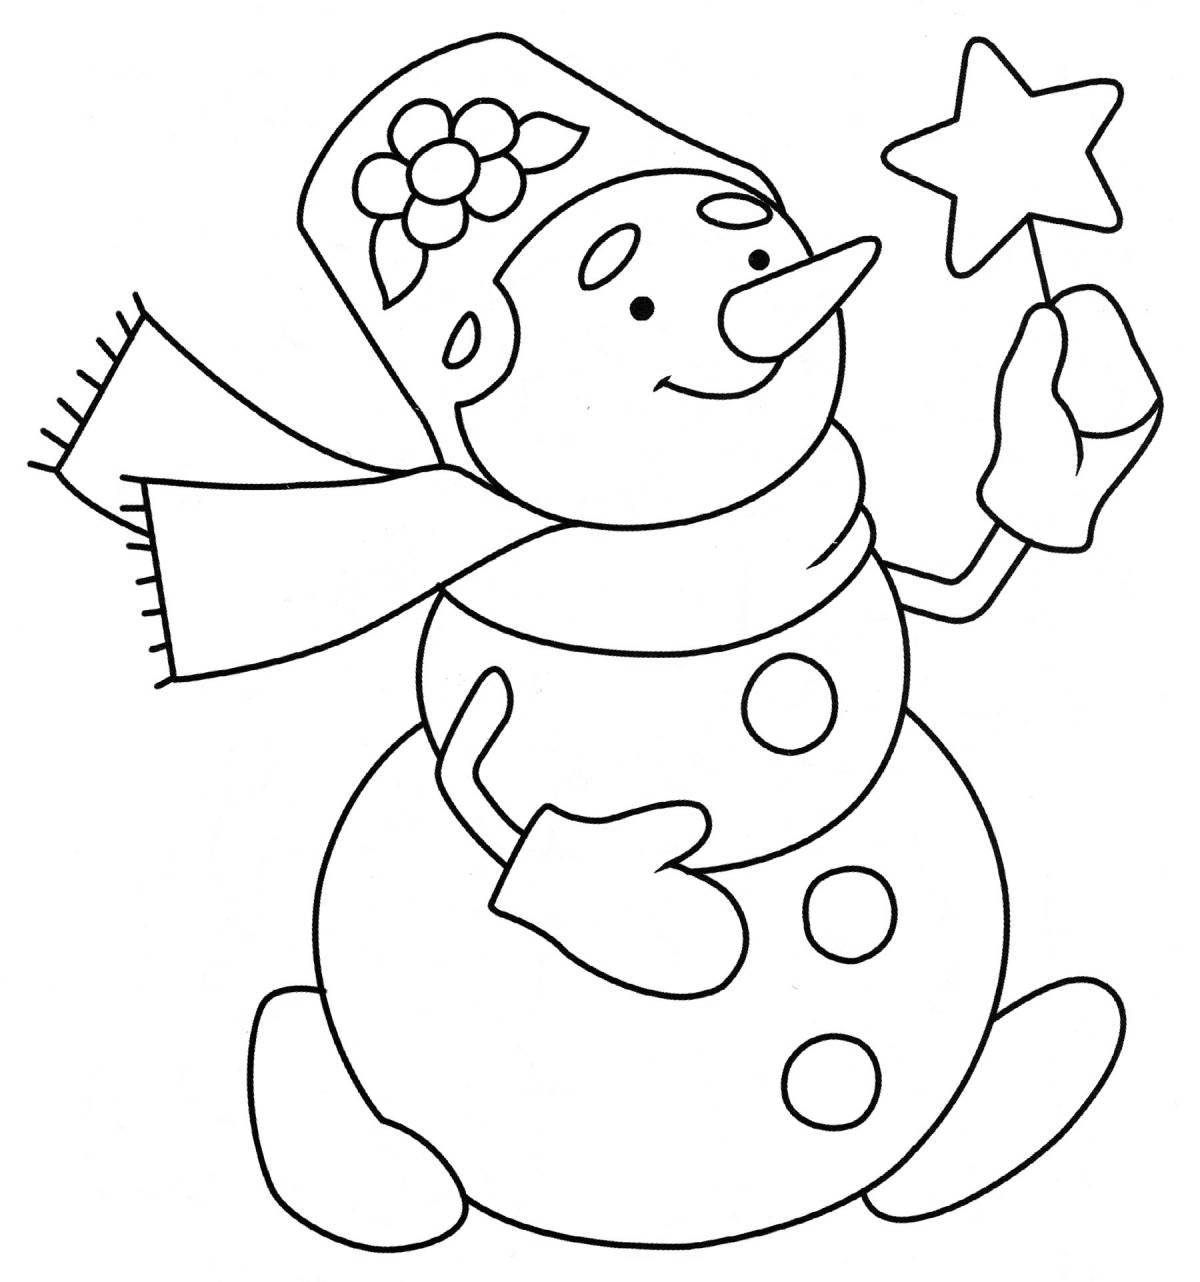 Праздничная раскраска снеговик для детей 4-5 лет